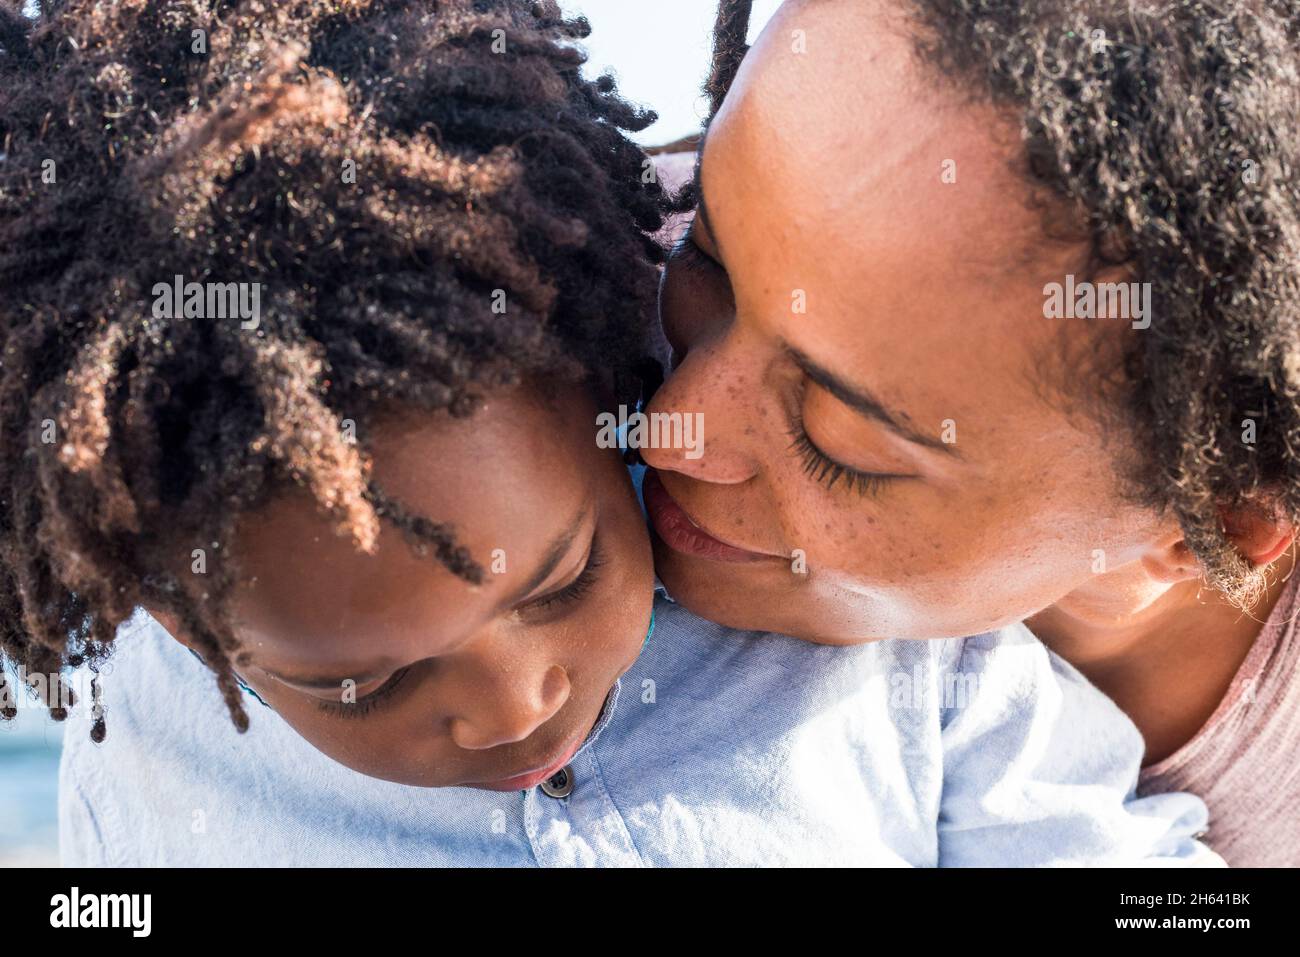 Nahaufnahme von Mutter und Sohn in Liebesgefühl - schwarze ethnische junge Frau küssen ansehnliche afroamerikanische Kind - Süße Familie Paar Outdoor-Konzept - afrikanische und moderne Frisur Menschen Stockfoto